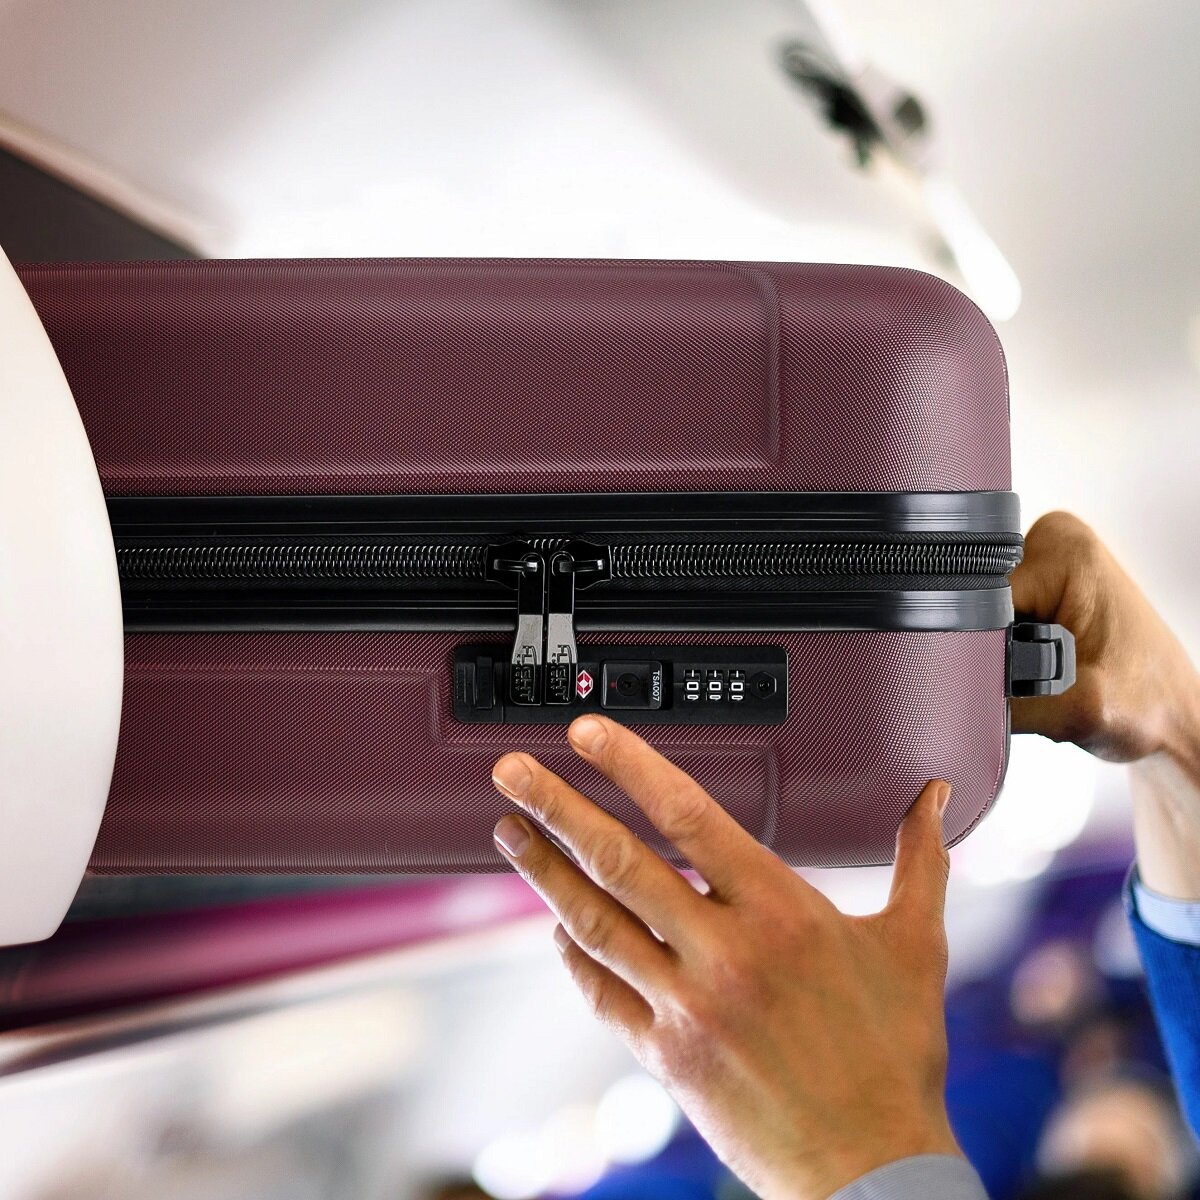 Walizka Anpa średnia granatowa  wkładanie  walizki w kabinie samolotu w miejsce na bagaże nad fotelem